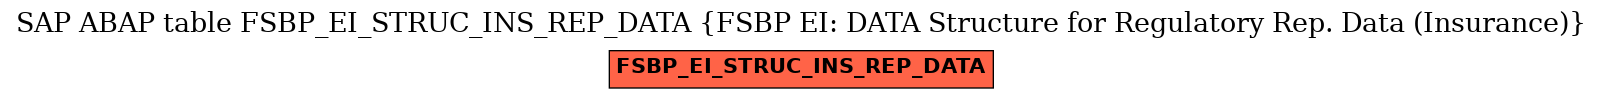 E-R Diagram for table FSBP_EI_STRUC_INS_REP_DATA (FSBP EI: DATA Structure for Regulatory Rep. Data (Insurance))